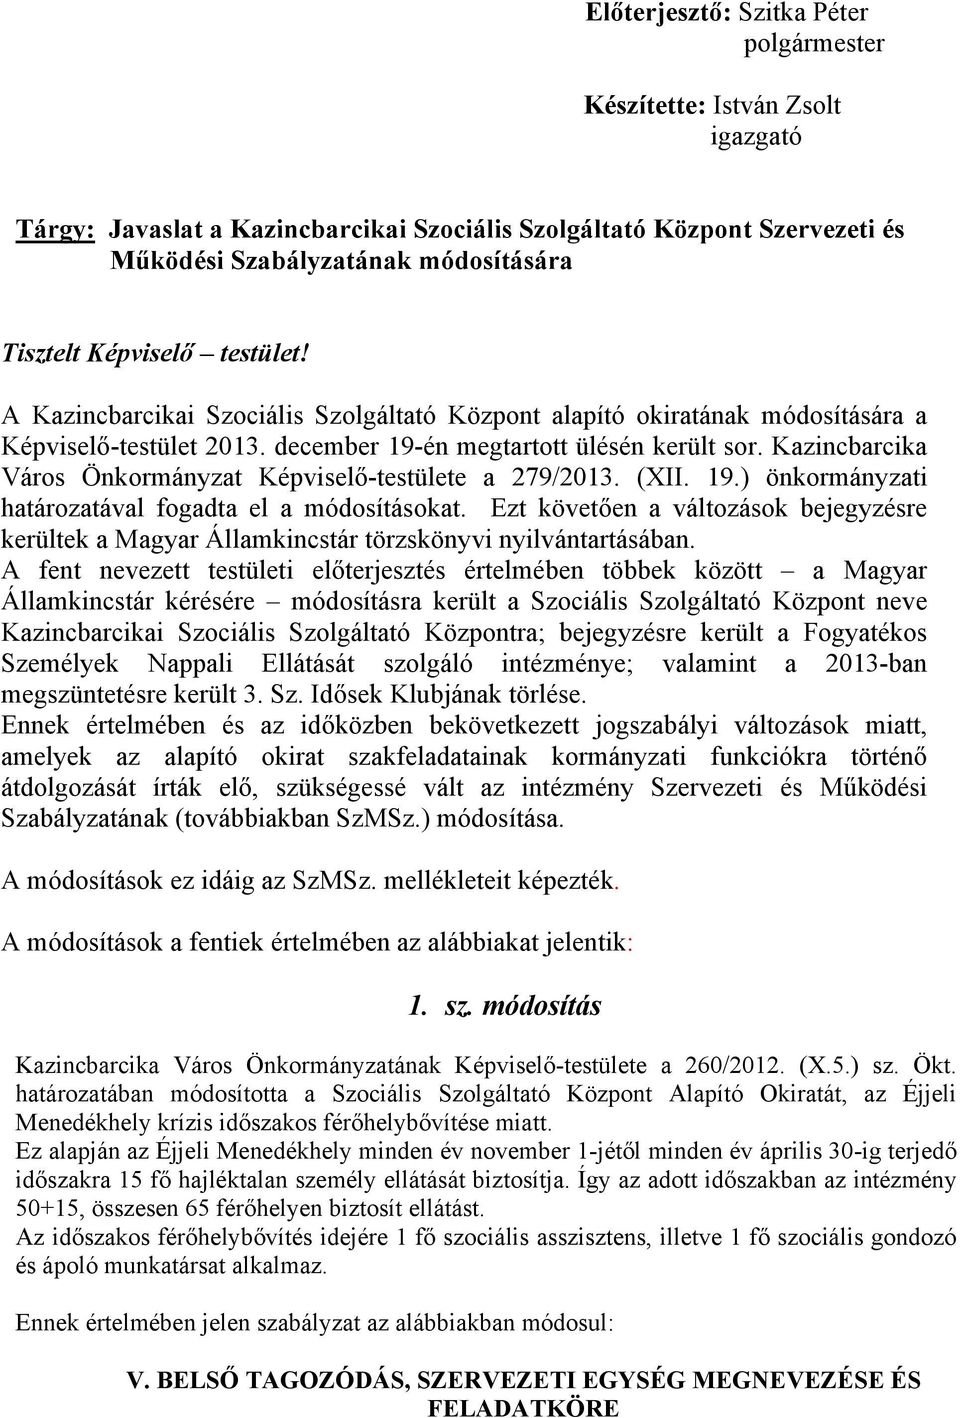 Kazincbarcika Város Önkormányzat Képviselő-testülete a 279/2013. (XII. 19.) önkormányzati határozatával fogadta el a módosításokat.